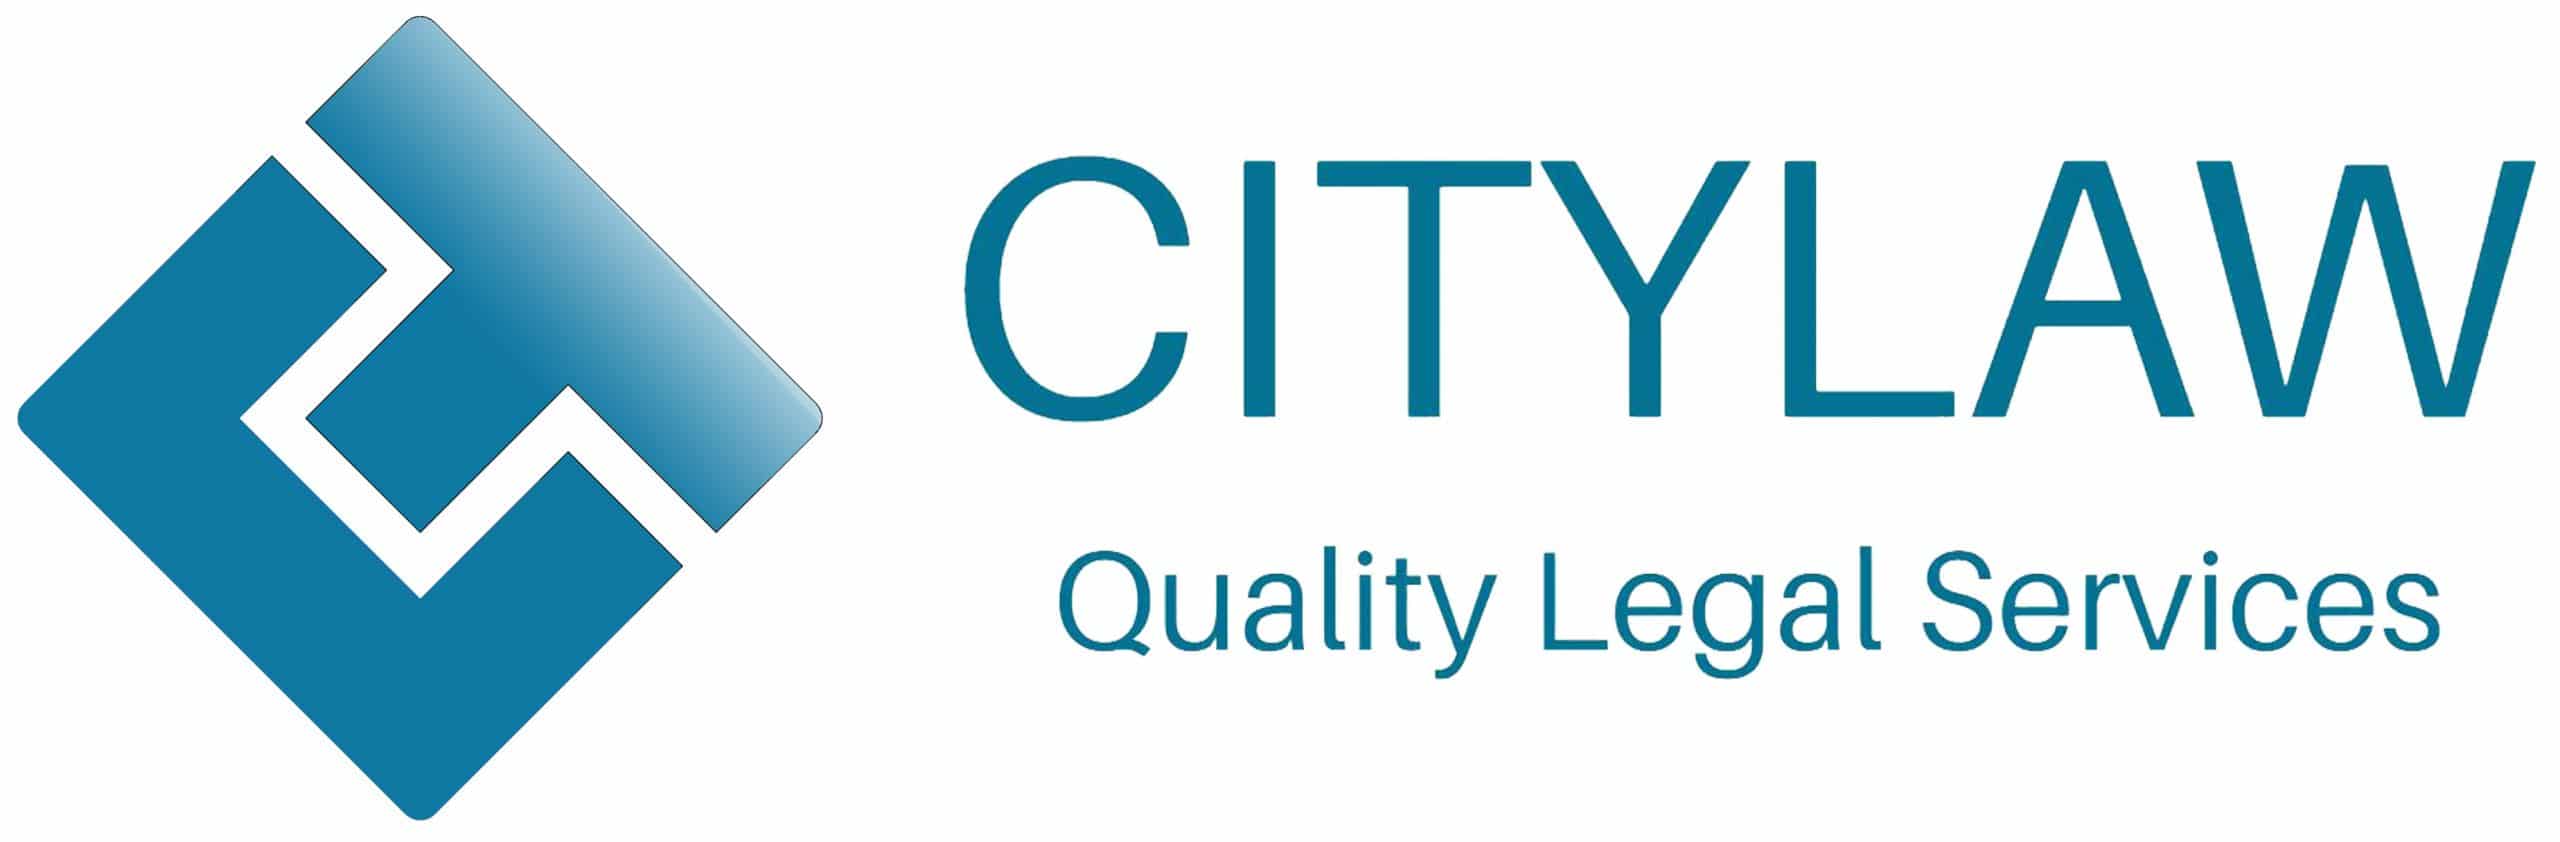 CITYLAW – Dịch vụ pháp lý chuyên nghiệp